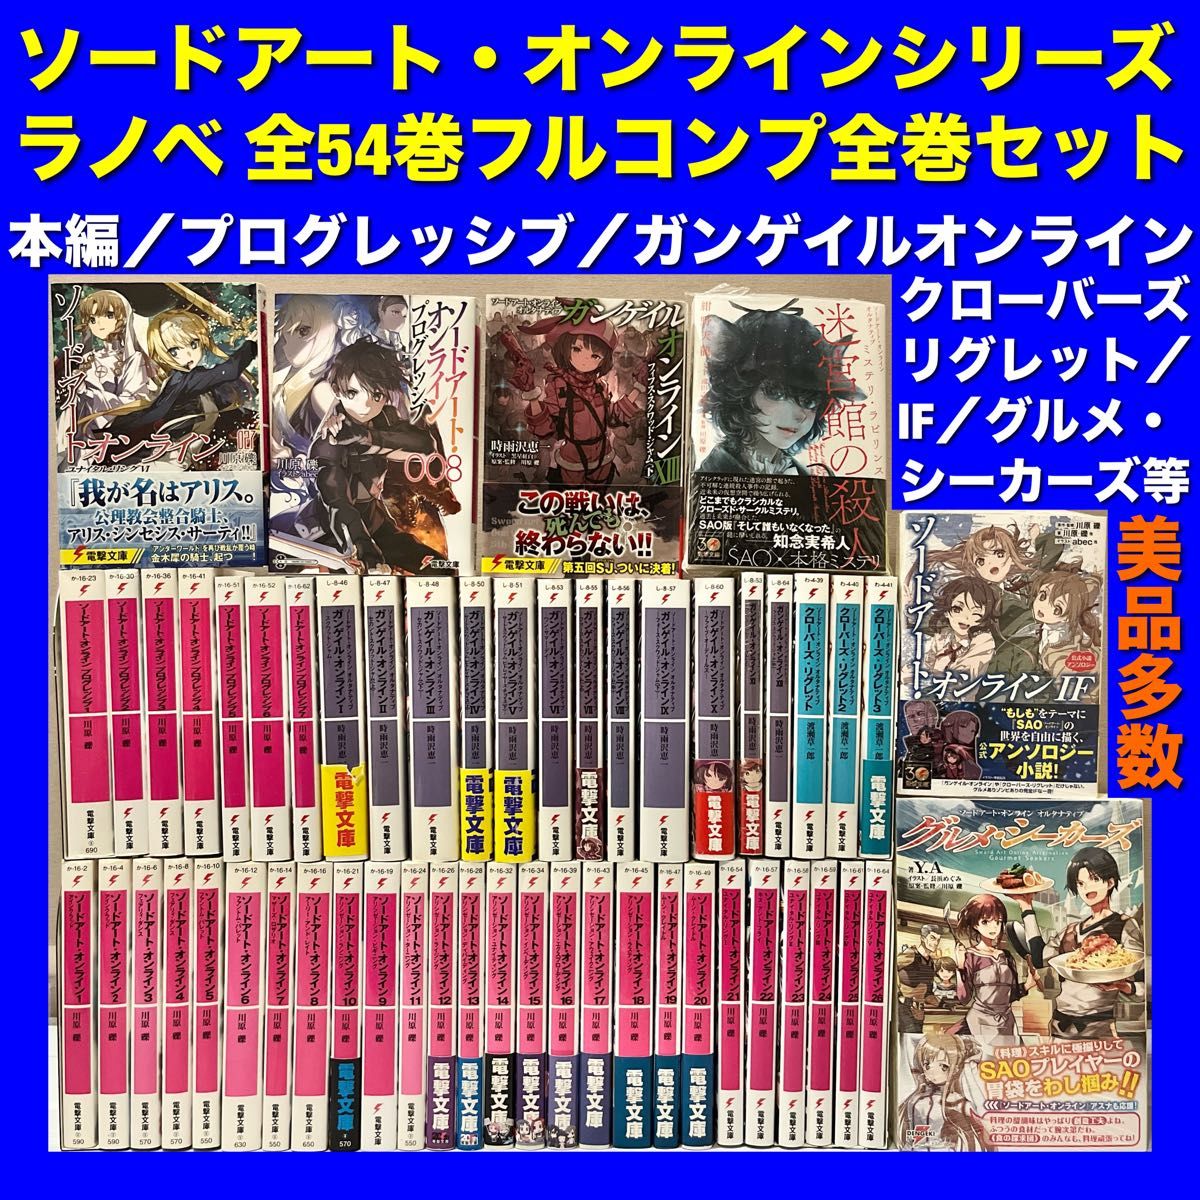 【美品多数】ソードアート・オンラインシリーズラノベ 全54巻全巻セット